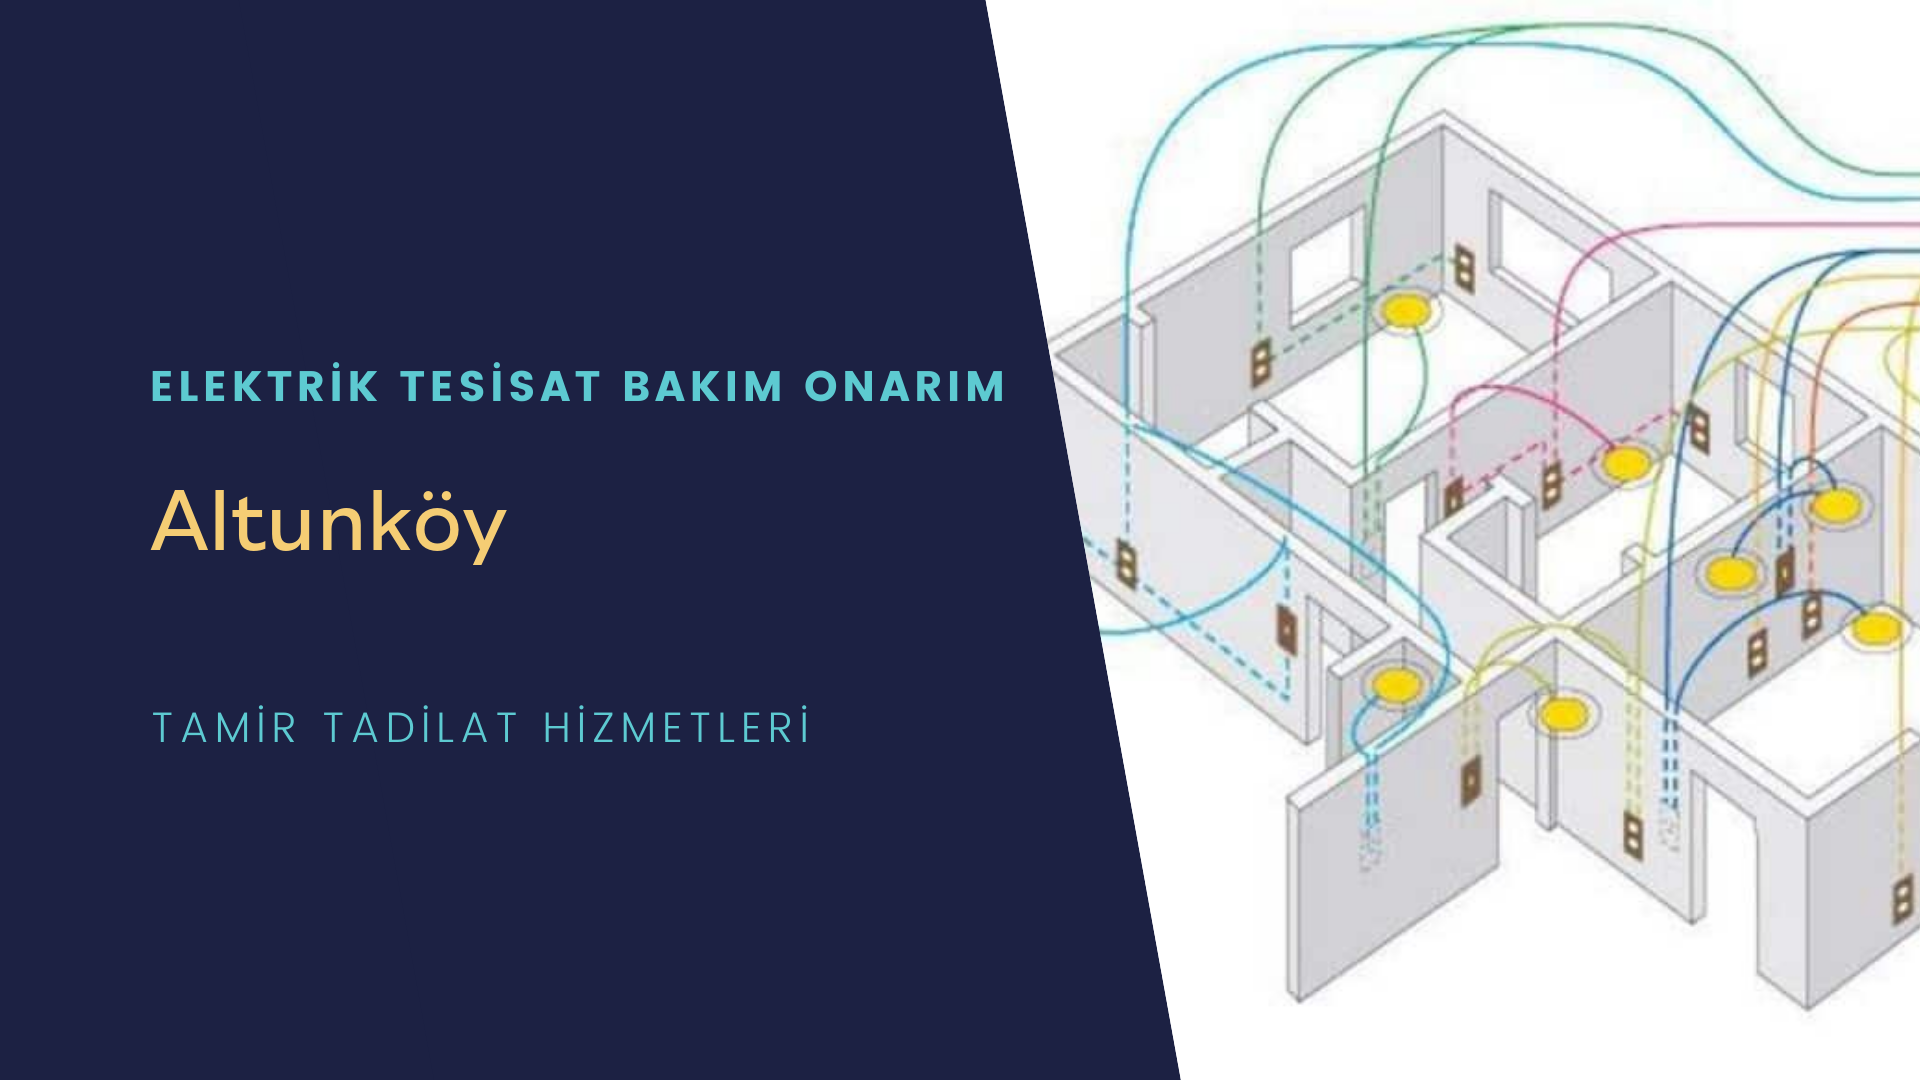 Altunköy'de elektrik tesisatı ustalarımı arıyorsunuz doğru adrestenizi Altunköy elektrik tesisatı ustalarımız 7/24 sizlere hizmet vermekten mutluluk duyar.